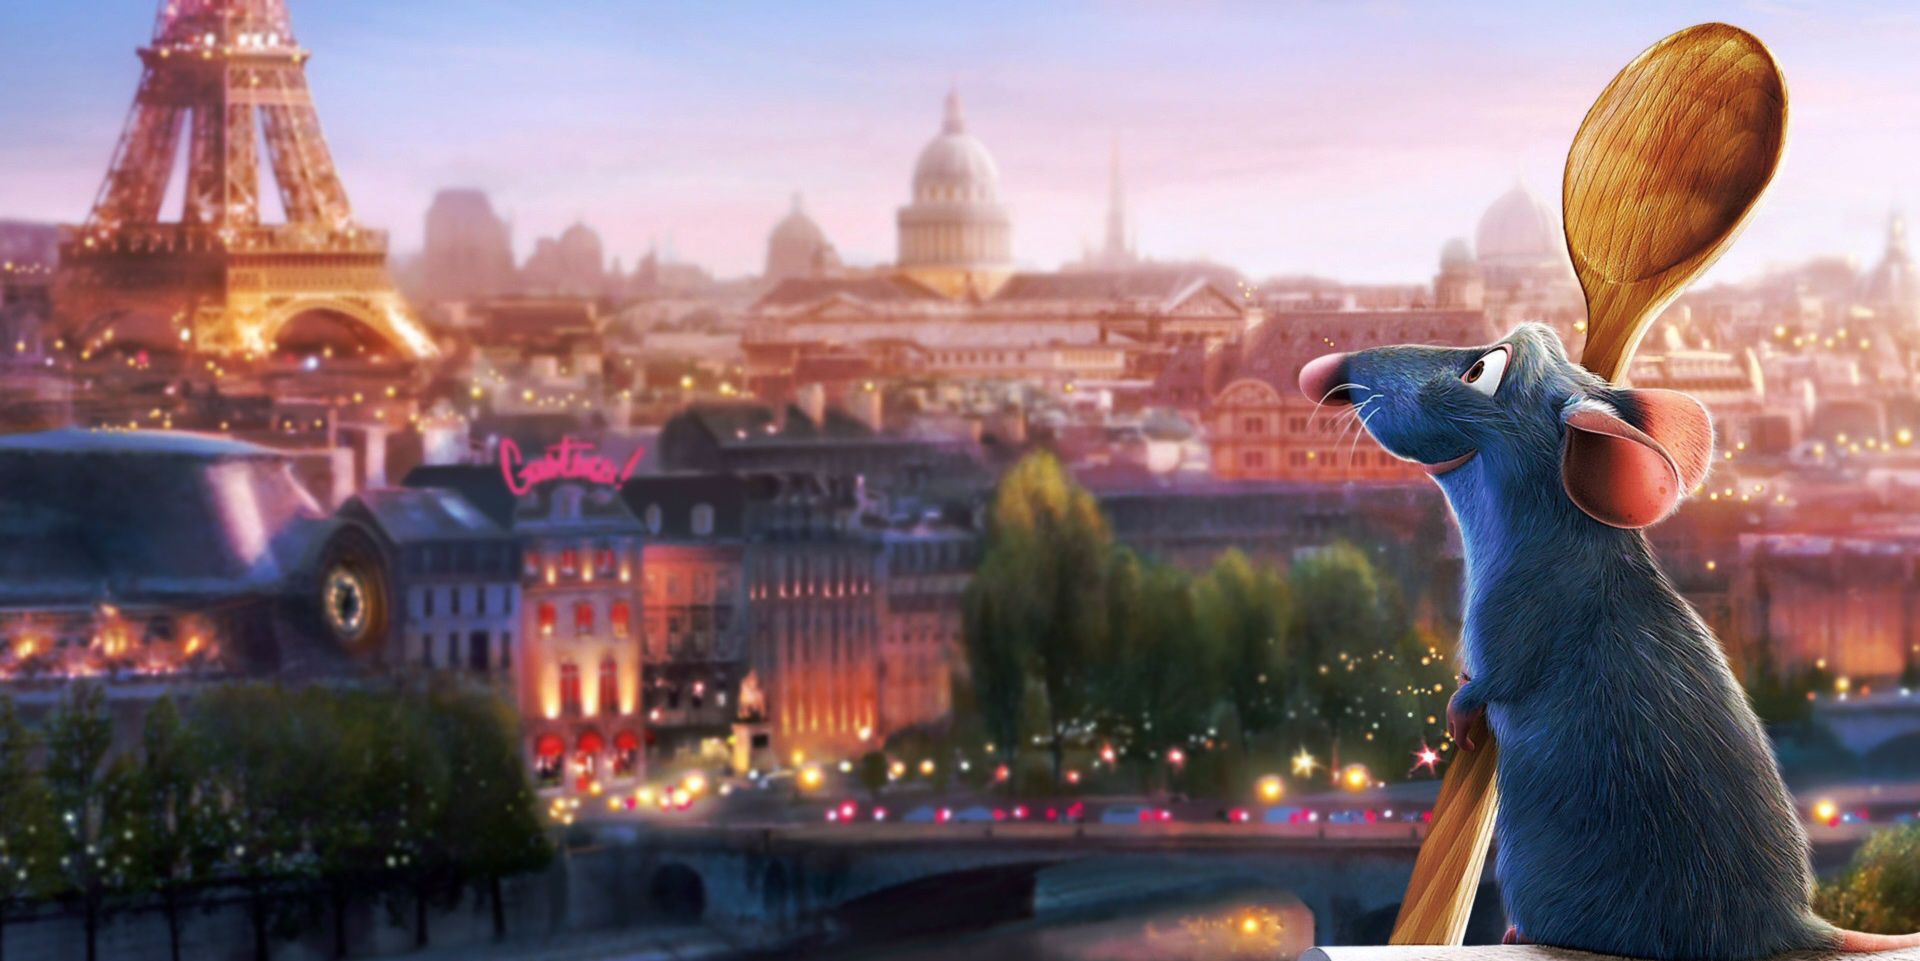 Pixar Ratatouille in Paris